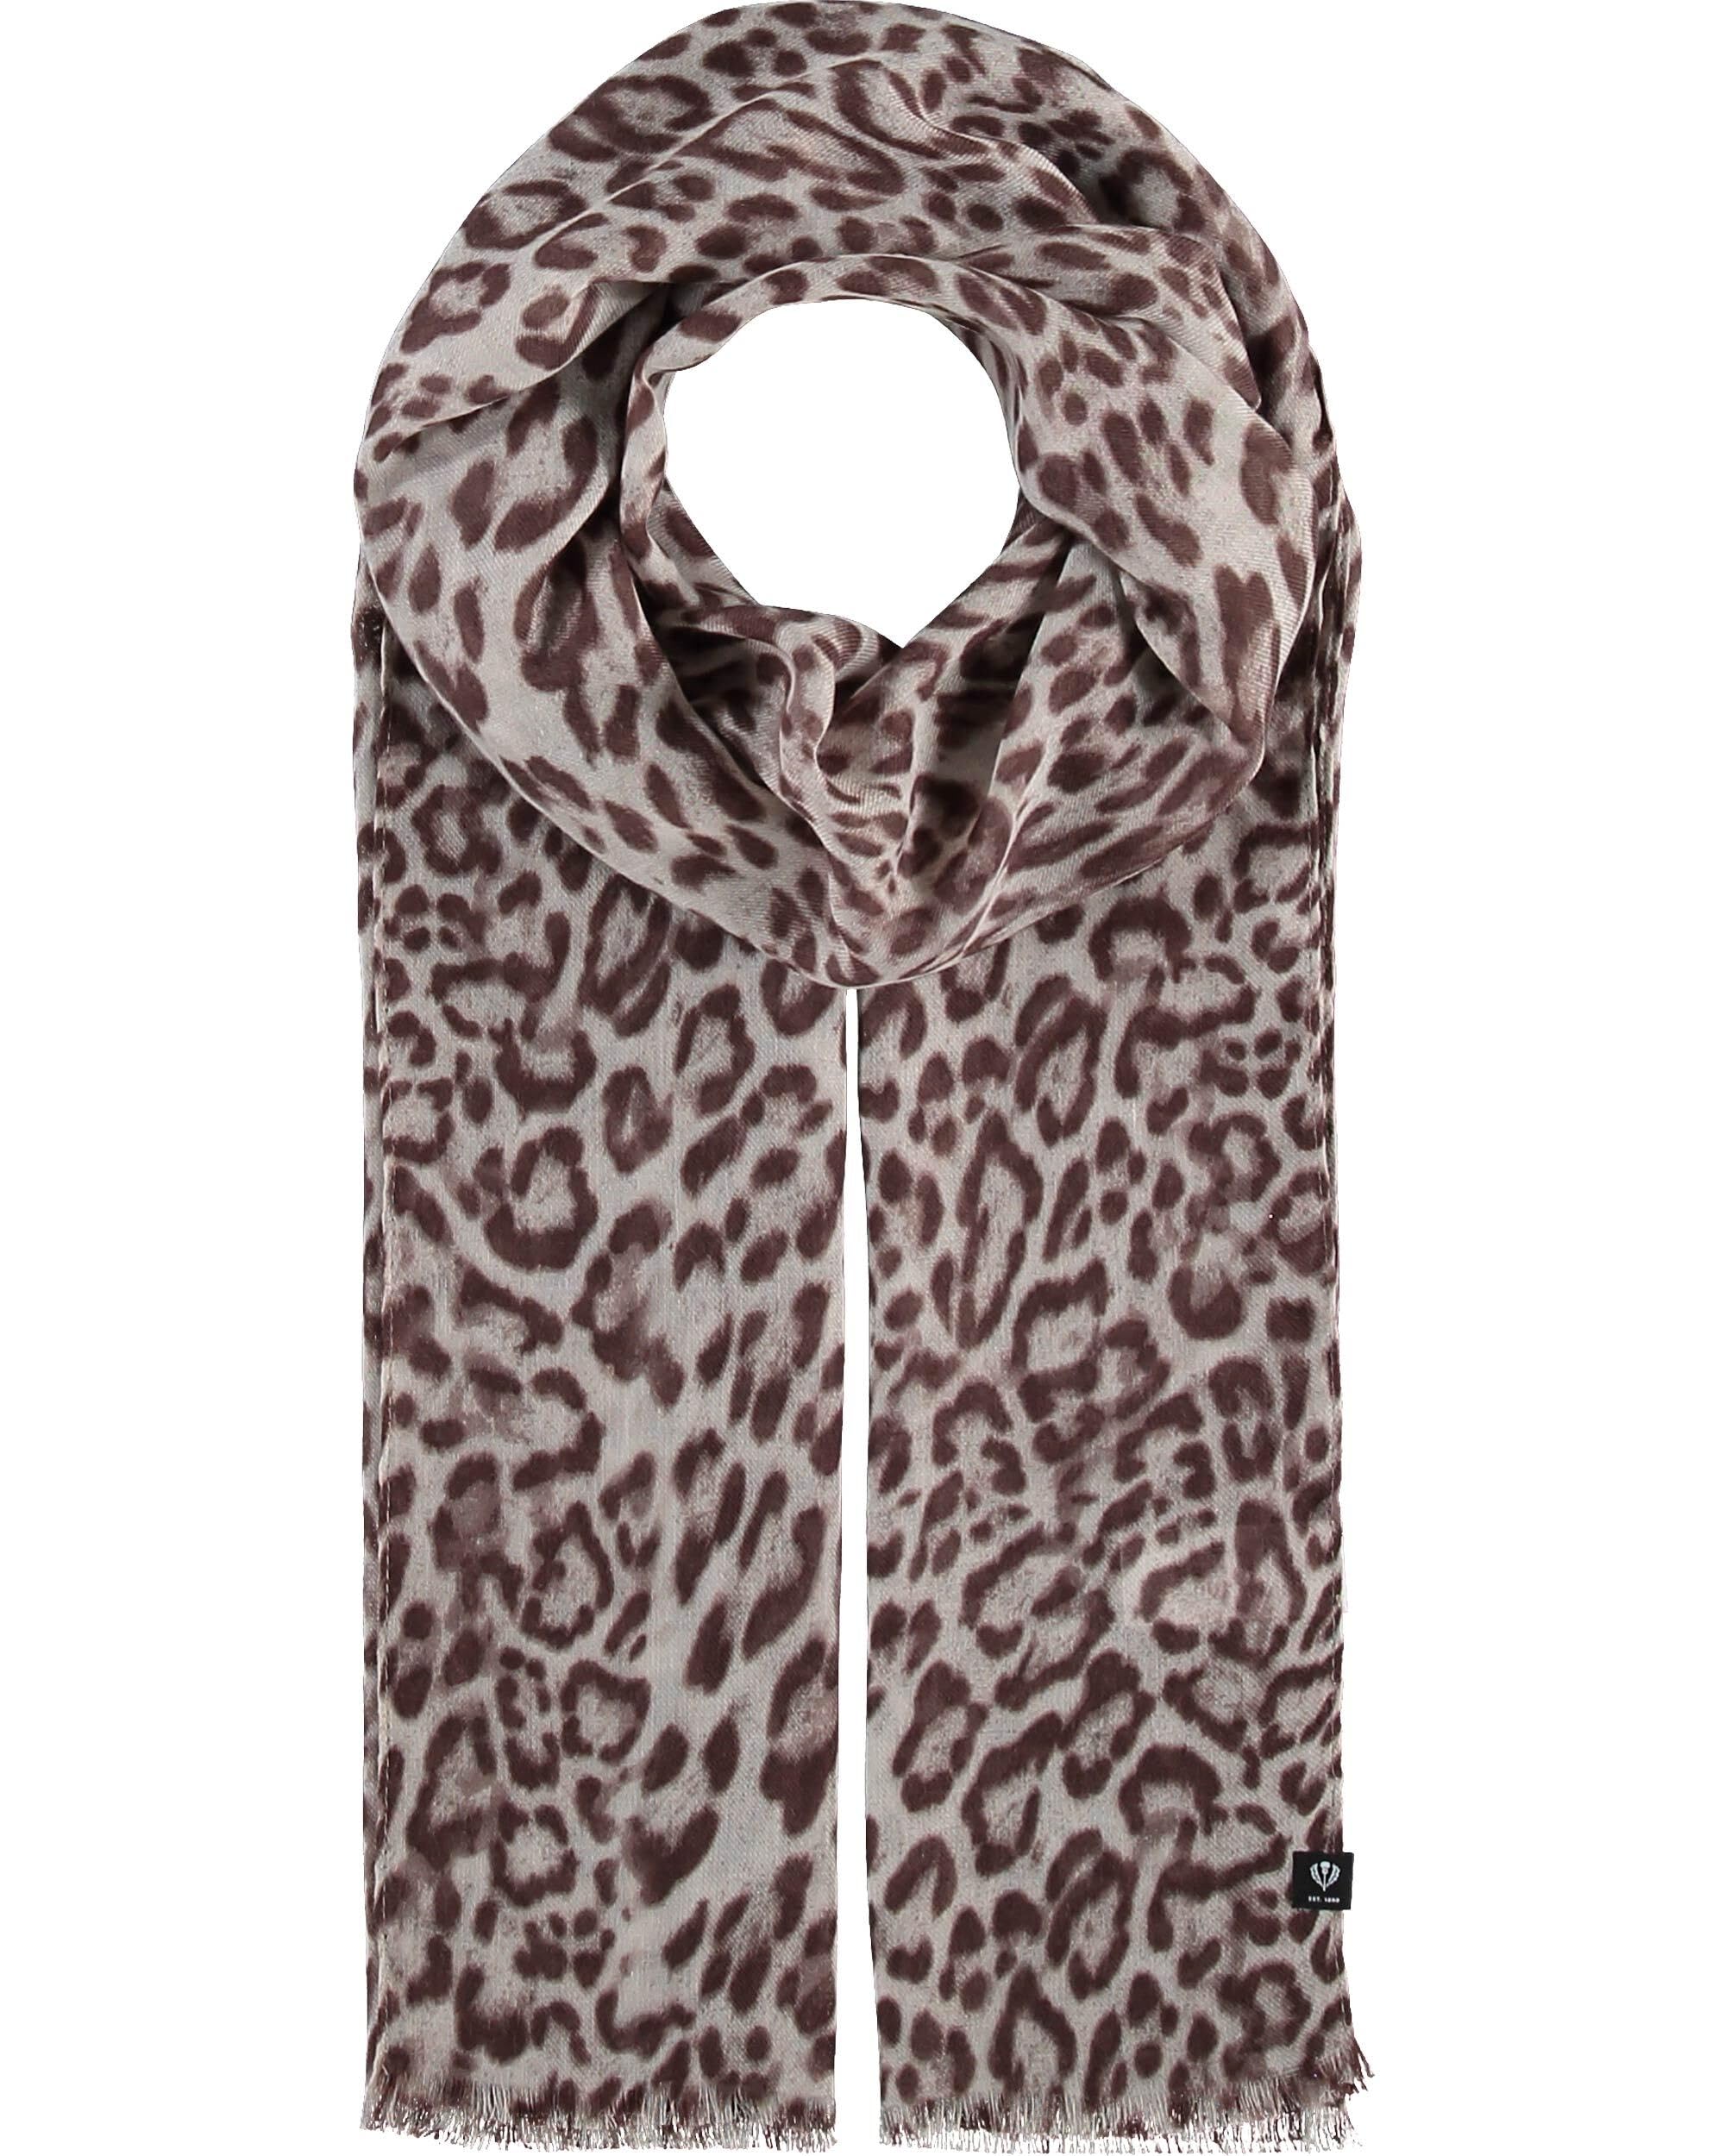 FRAAS Damen Schal mit Animal-Print angenehm weich - Perfekt für den Sommer - 180 x 50 cm - Polyester Taupe